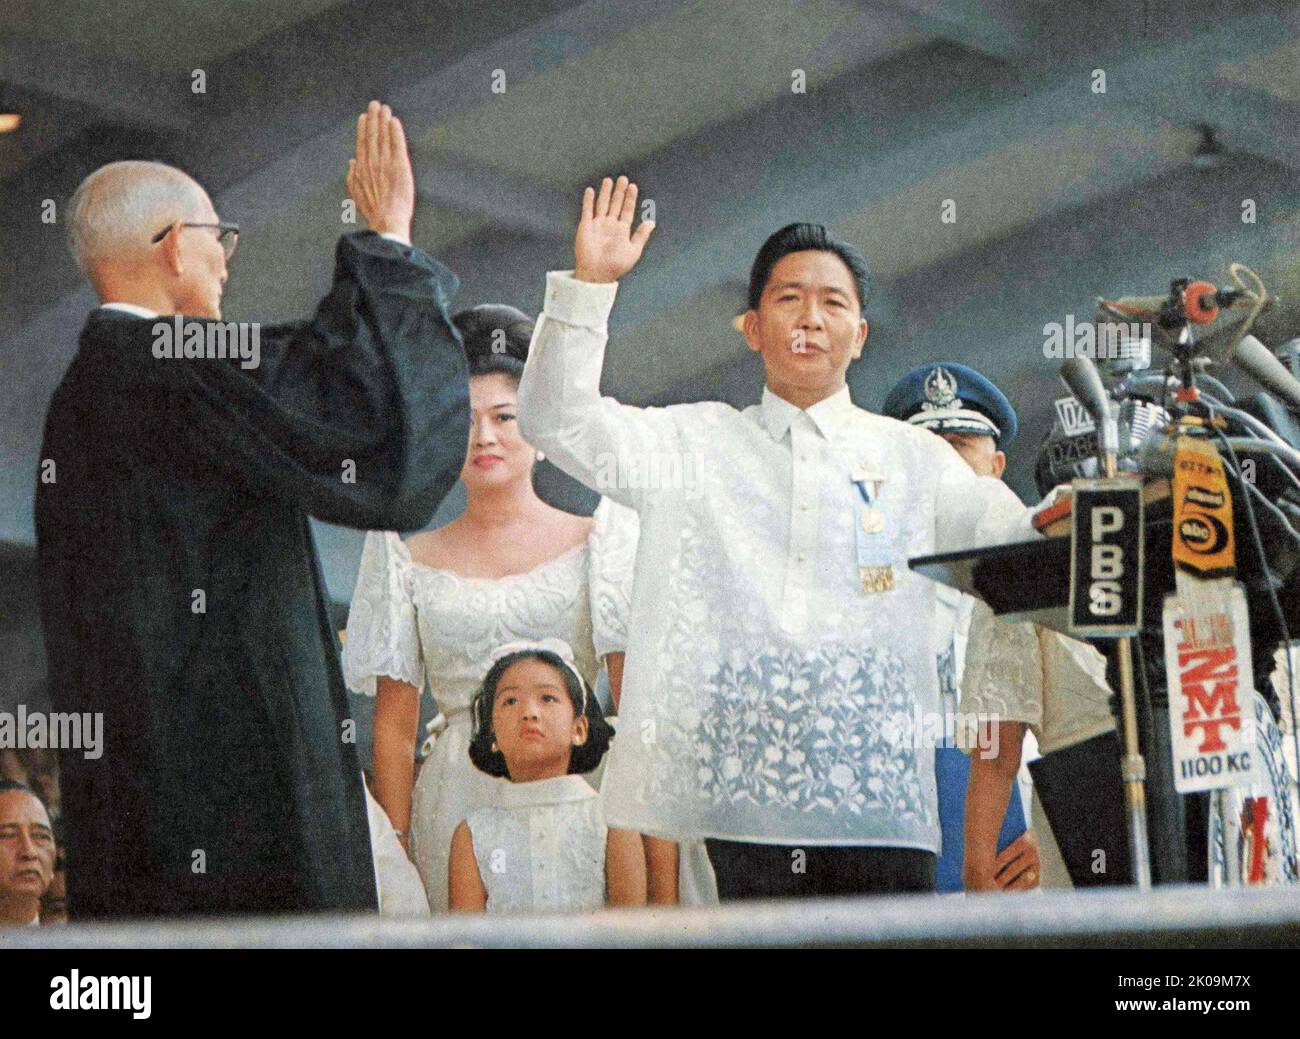 Ferdinand Marcos (1917 - 1989) politico filippino; presidente delle Filippine dal 1965 al 1986, governò come dittatore sotto la legge marziale dal 1972 al 1981 e mantenne la maggior parte dei suoi poteri di legge marziale fino a quando fu deposto nel 1986. Foto Stock